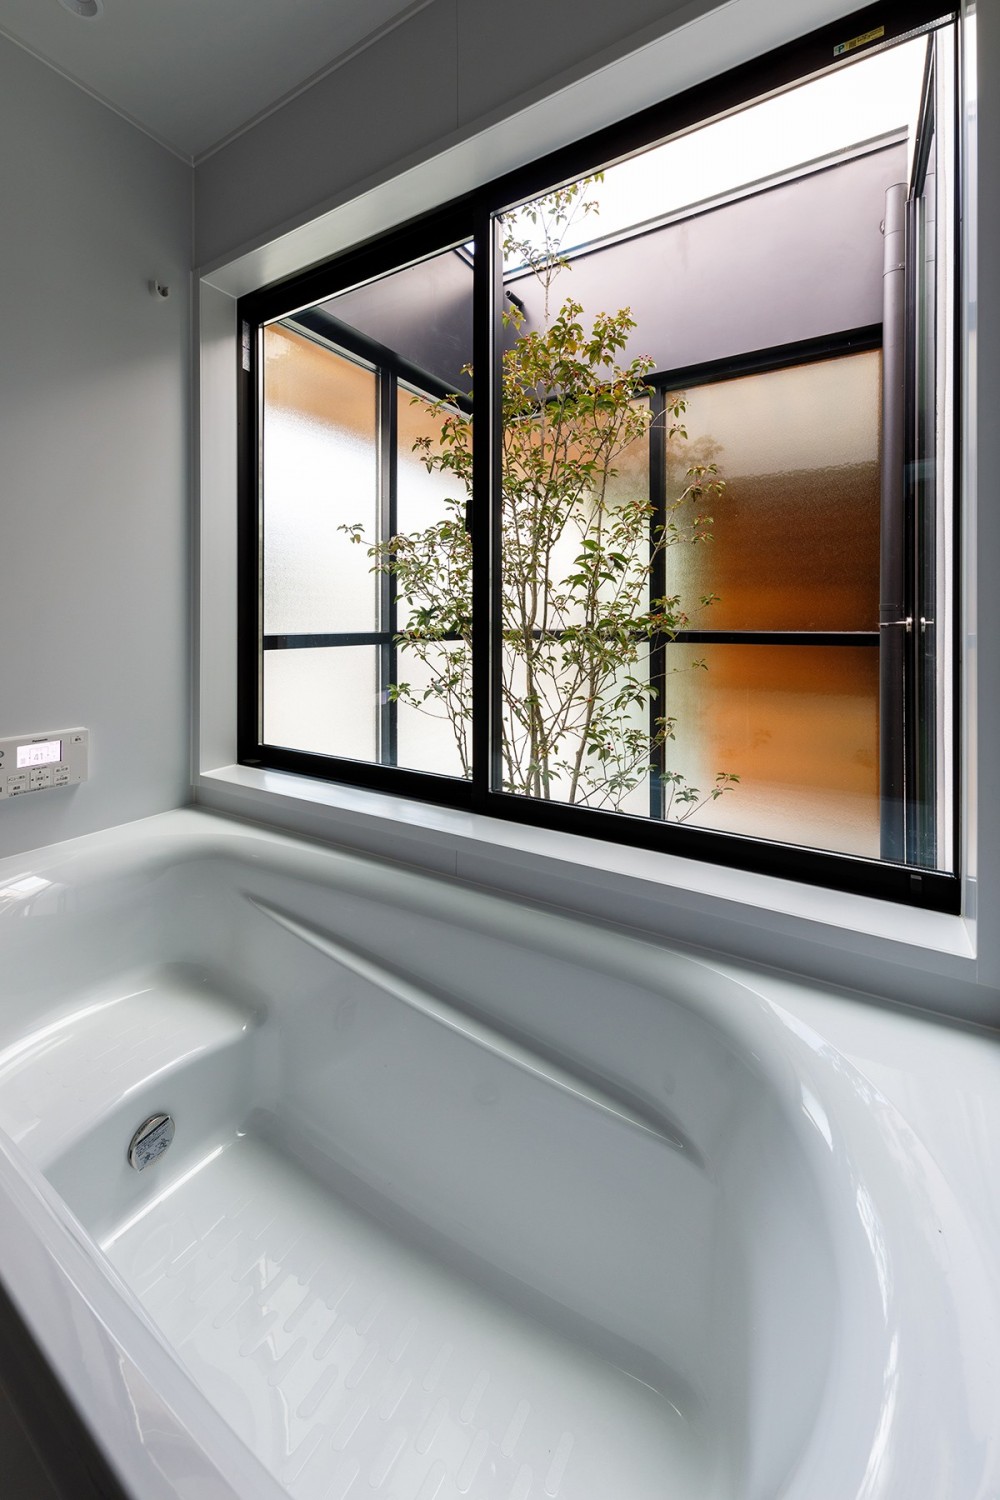 haus-cros / 十字フレームが印象付ける和洋折衷テイストの箱型中庭住宅 (haus-cros 浴室)